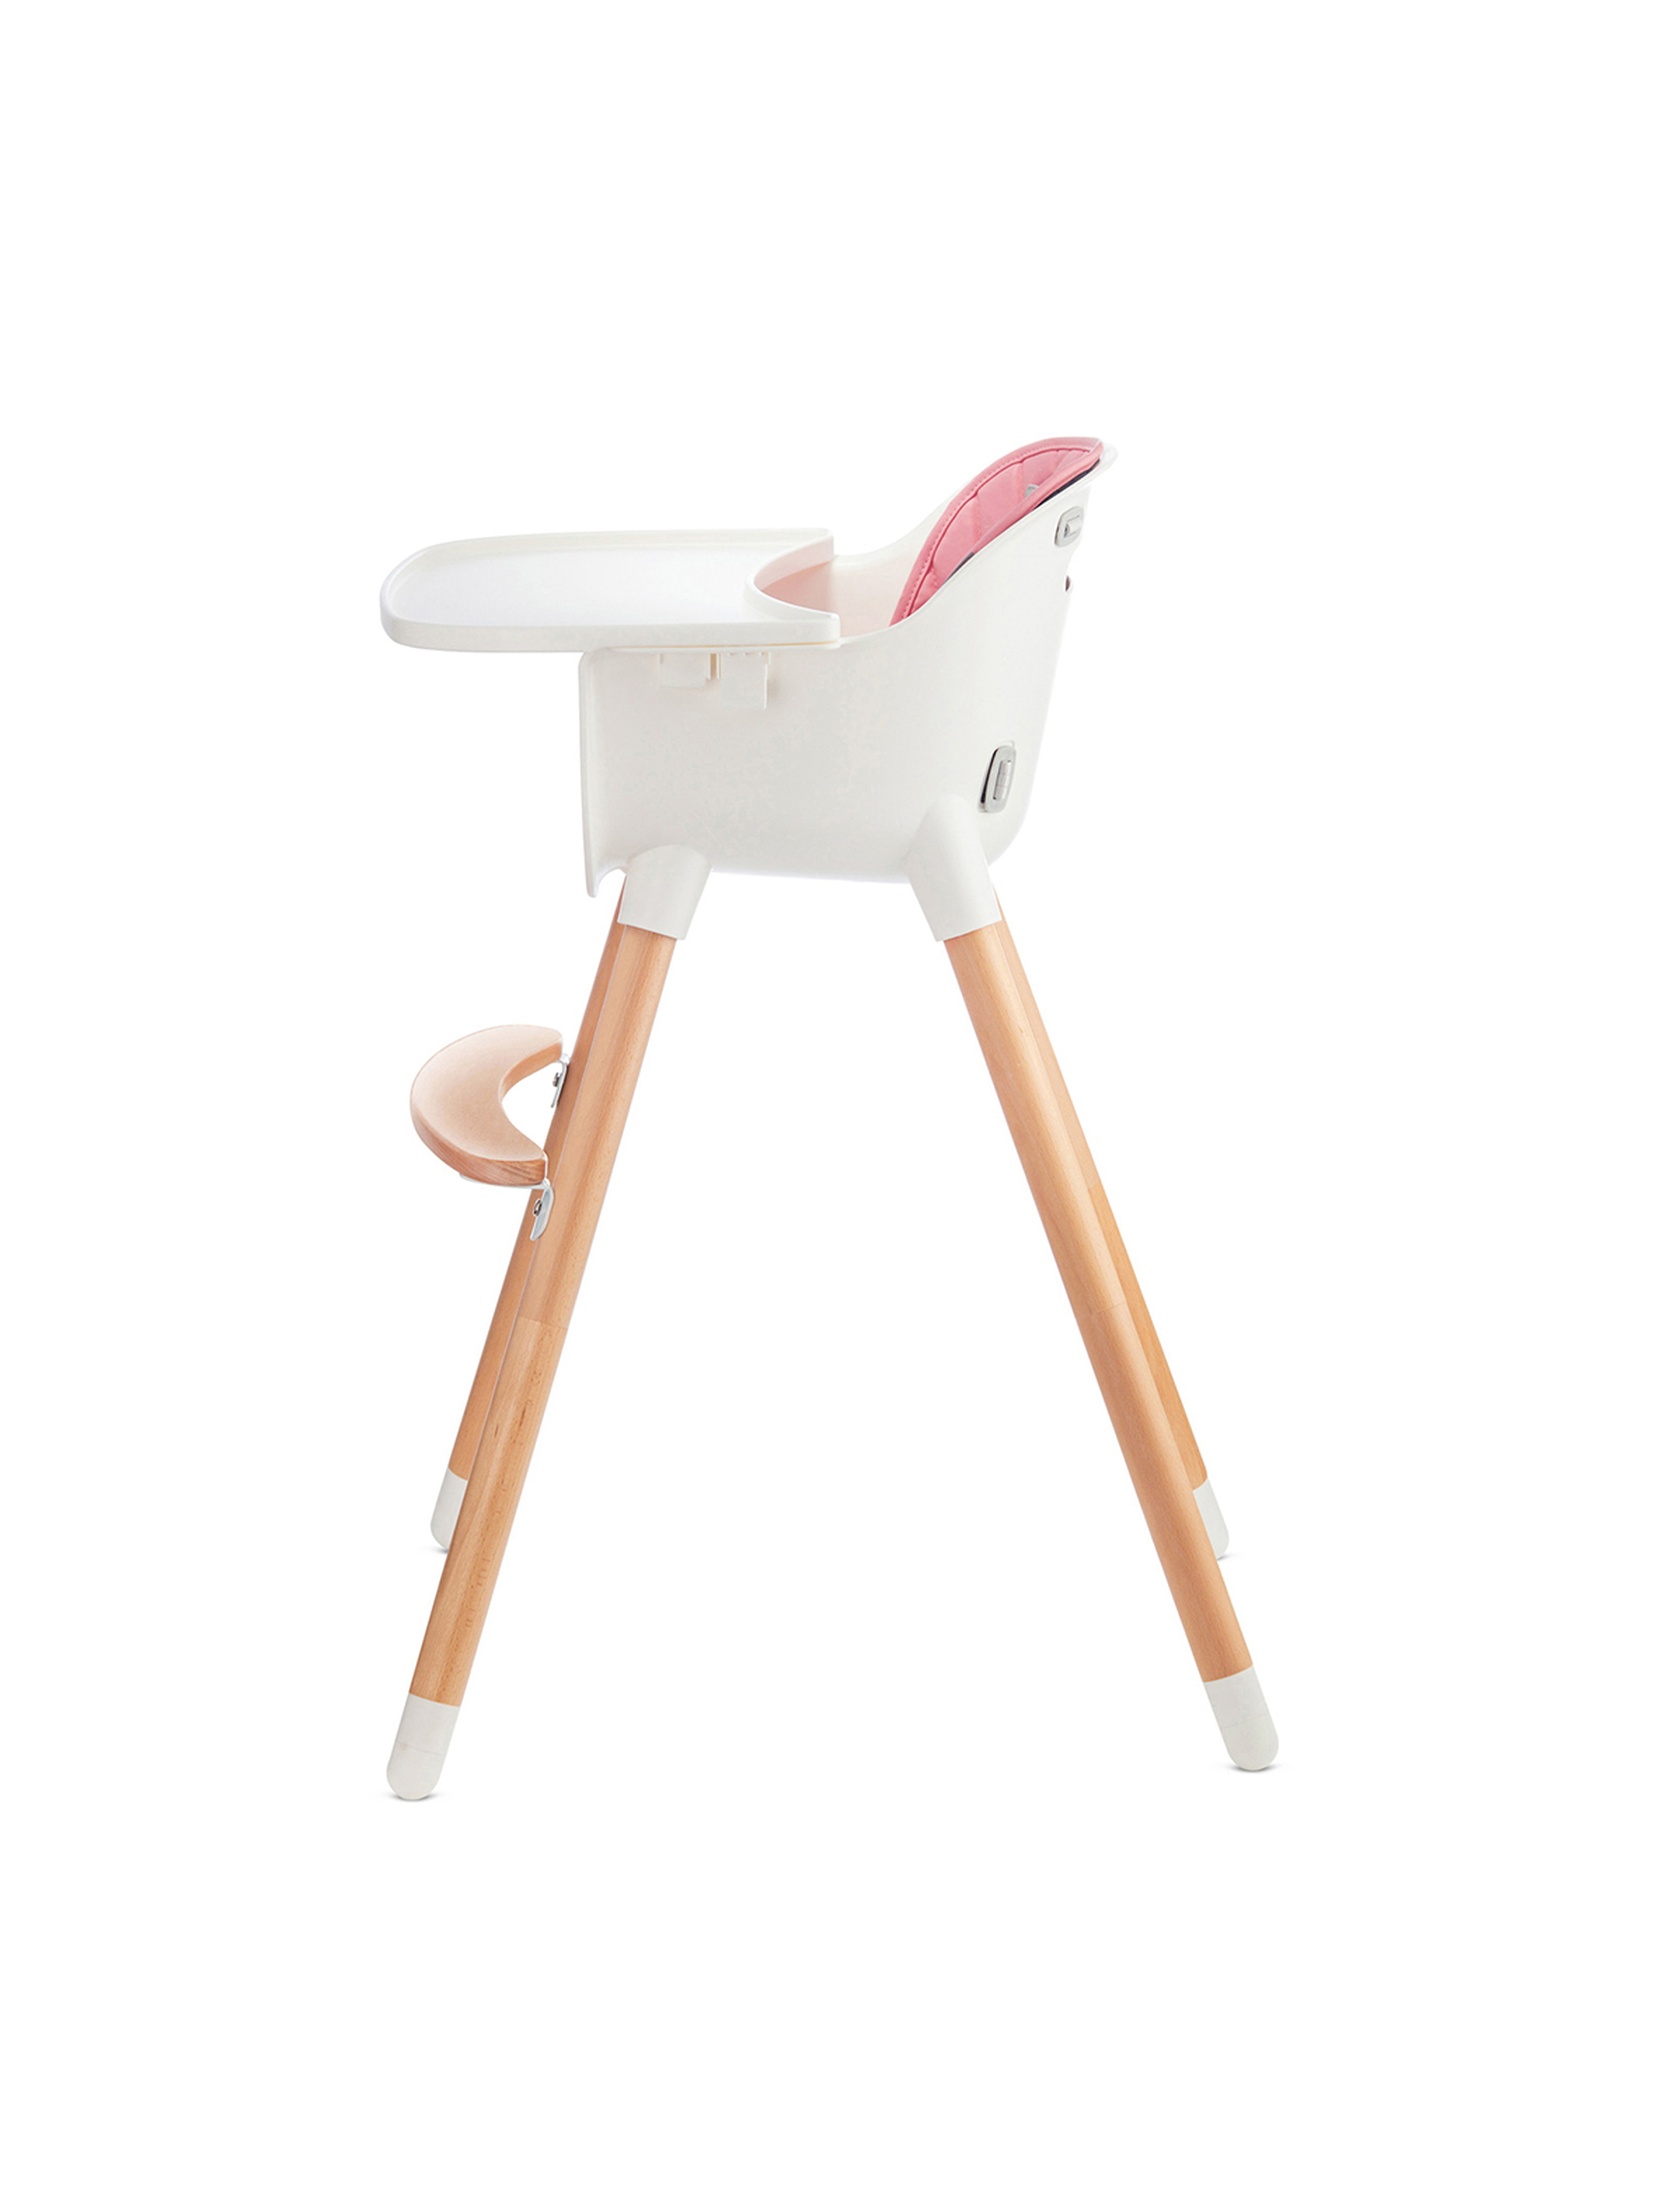 Krzesełko do karmienia Sienna Kindekraft - różowe